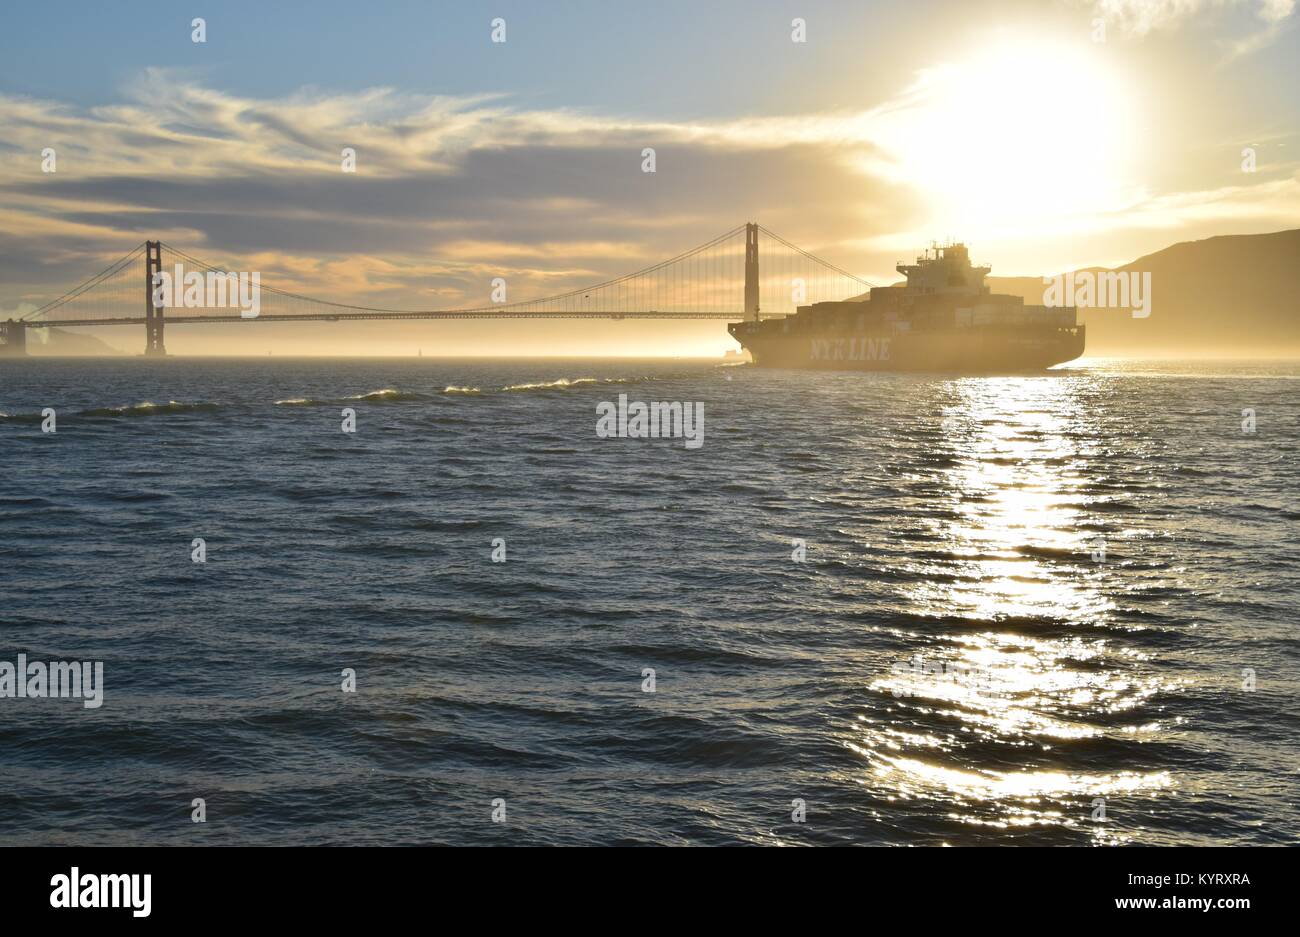 Containerschiff NYK Konstellation verläßt die Bucht von San Francisco unter der Golden Gate Bridge in den Sonnenuntergang. Stockfoto